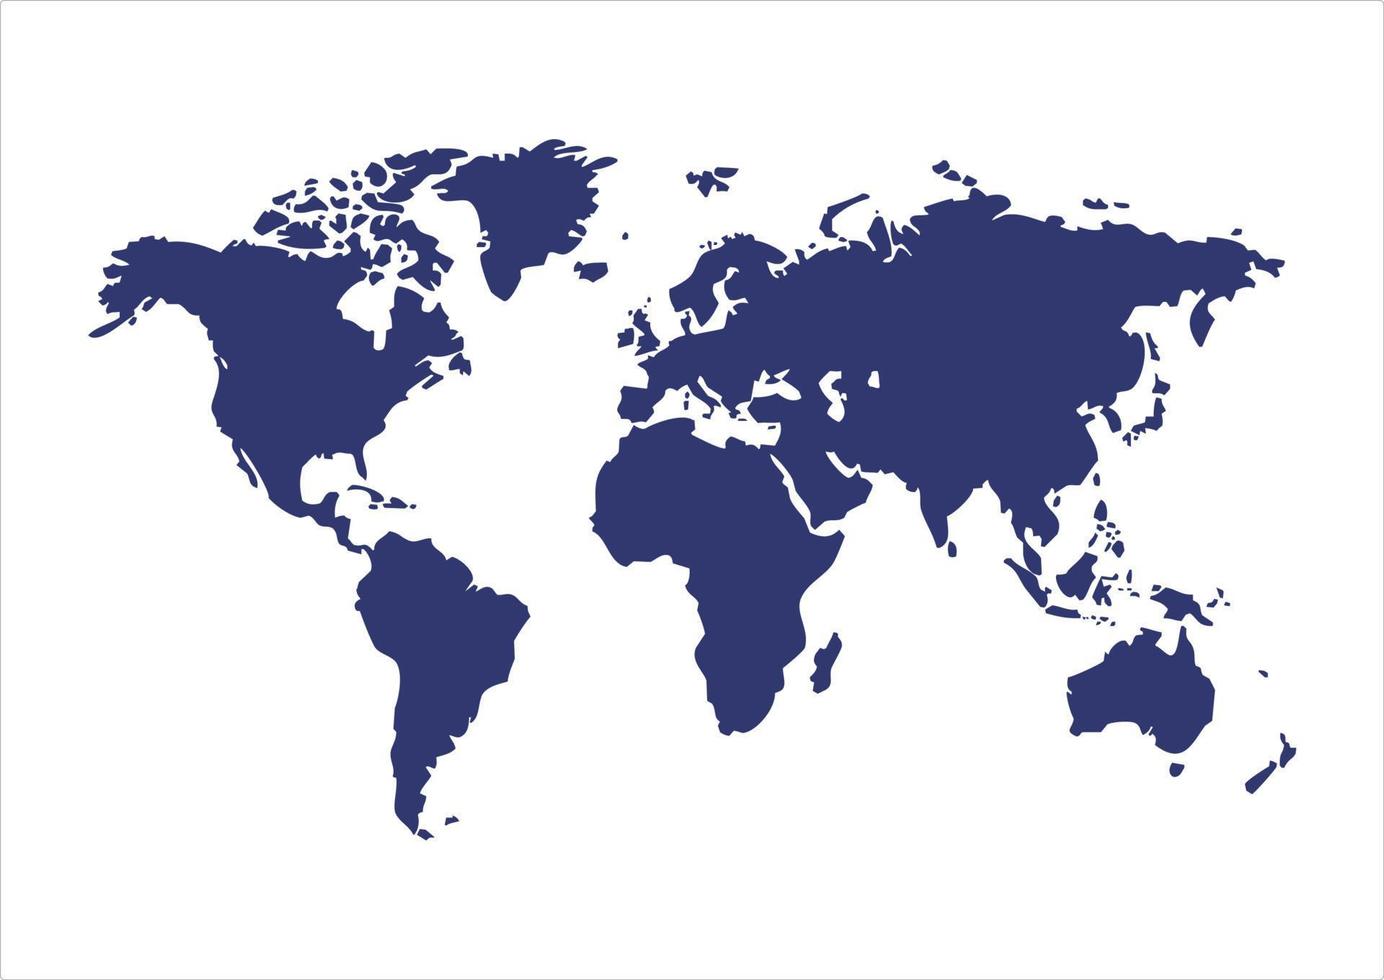 silueta del mapa mundial. todos los continentes e islas de la tierra en un mapa. vector